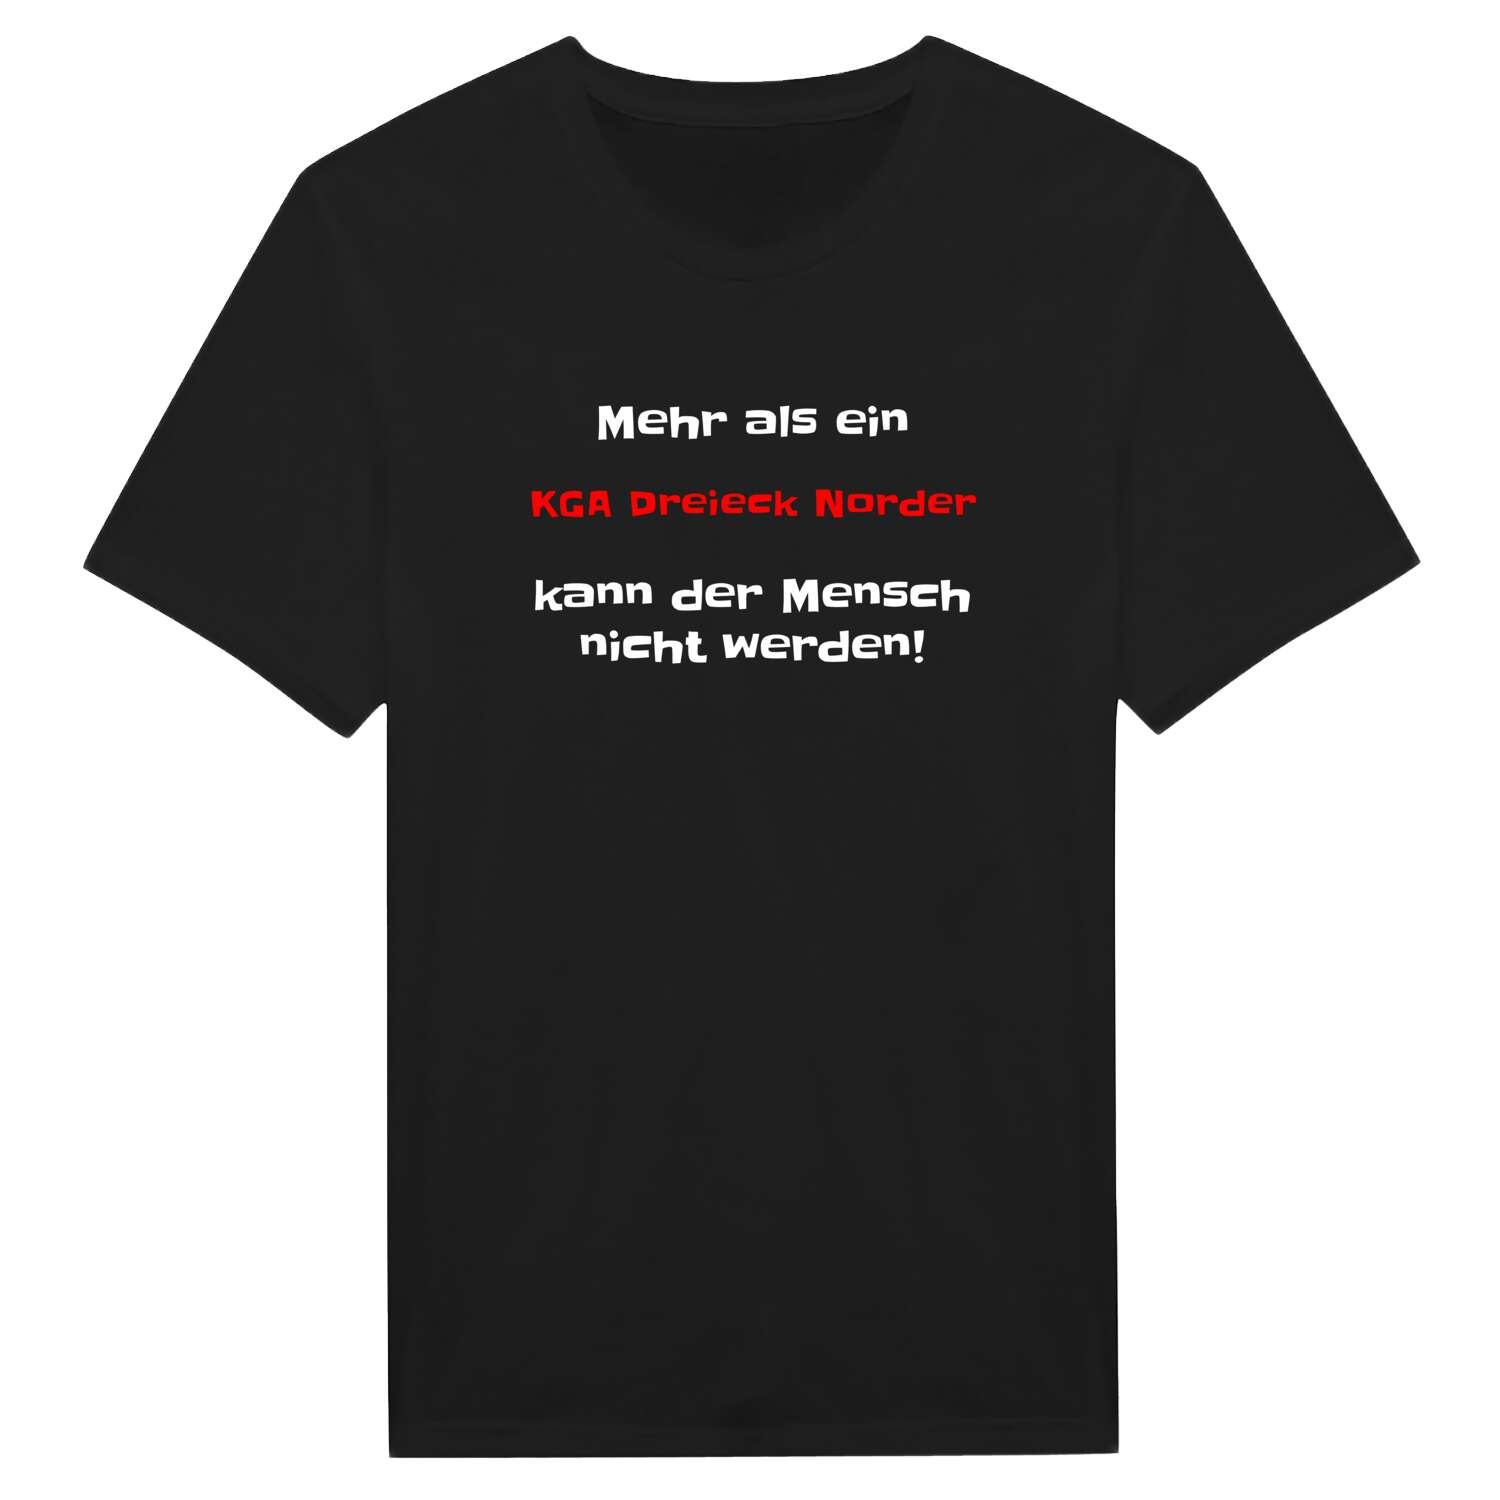 KGA Dreieck Nord T-Shirt »Mehr als ein«